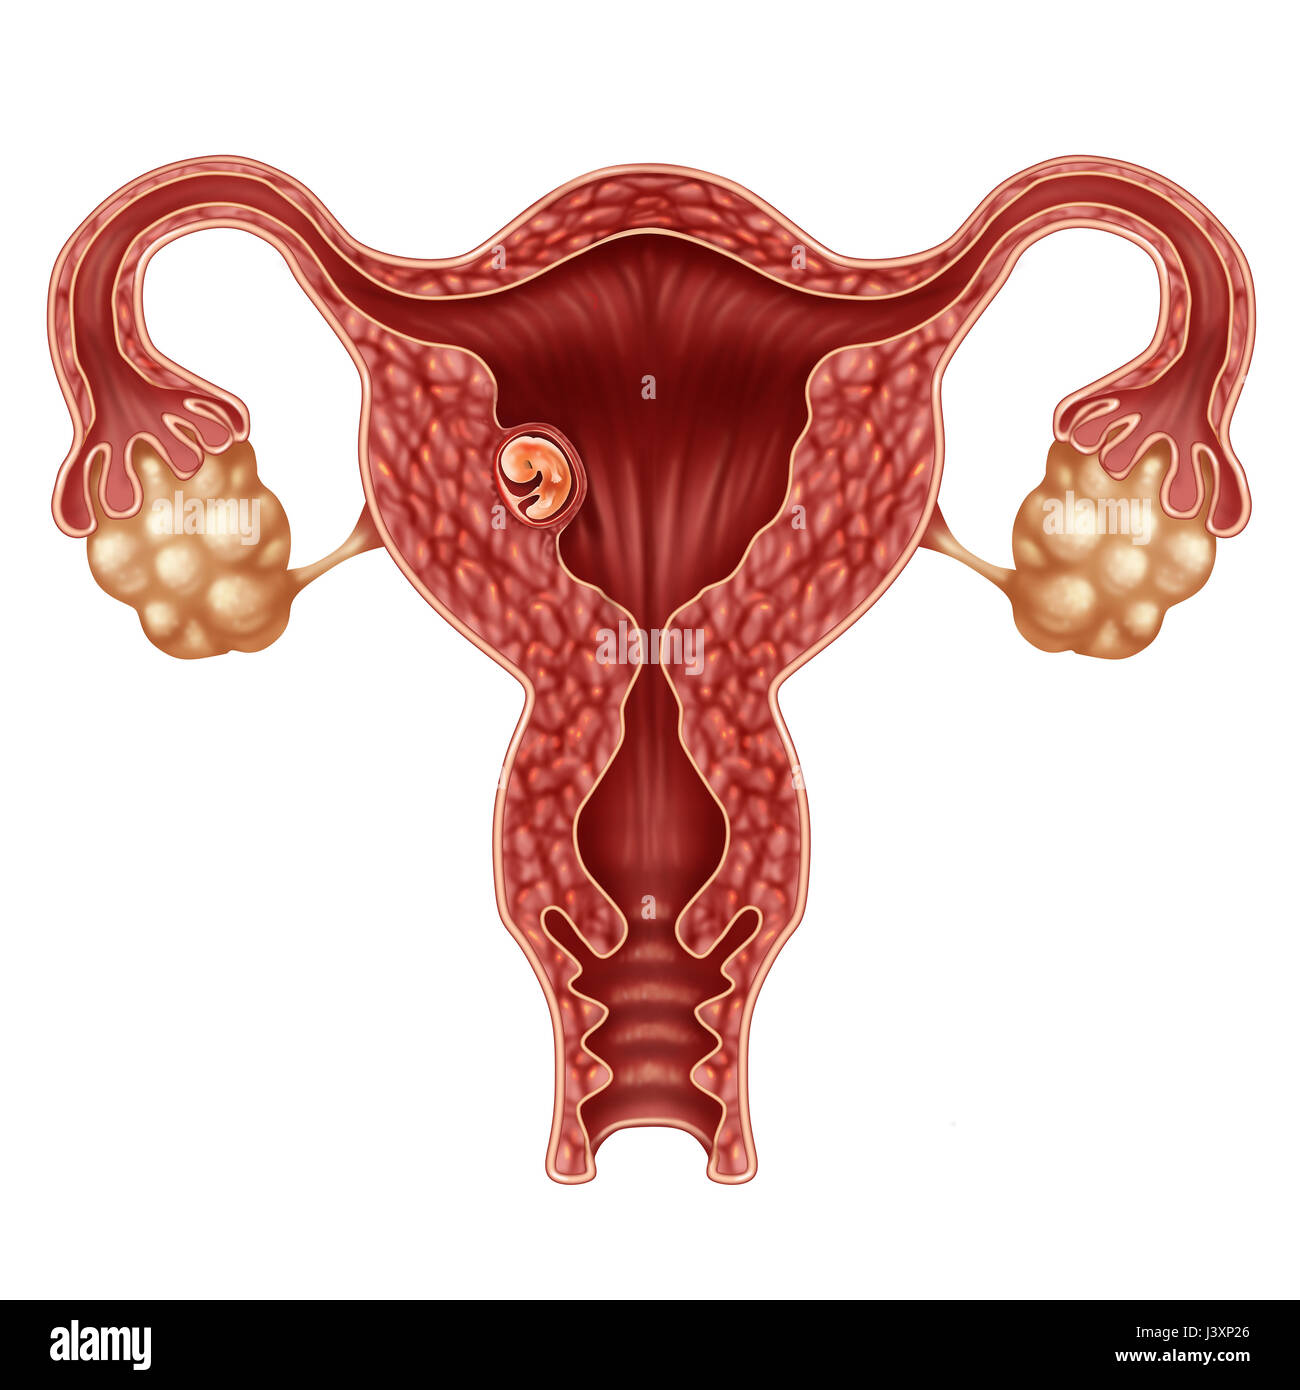 Impiantato embrione umano concetto e gravidanza riuscita l'impianto in utero come un feto in crescita in un corpo femminile come un ostetrico. Foto Stock